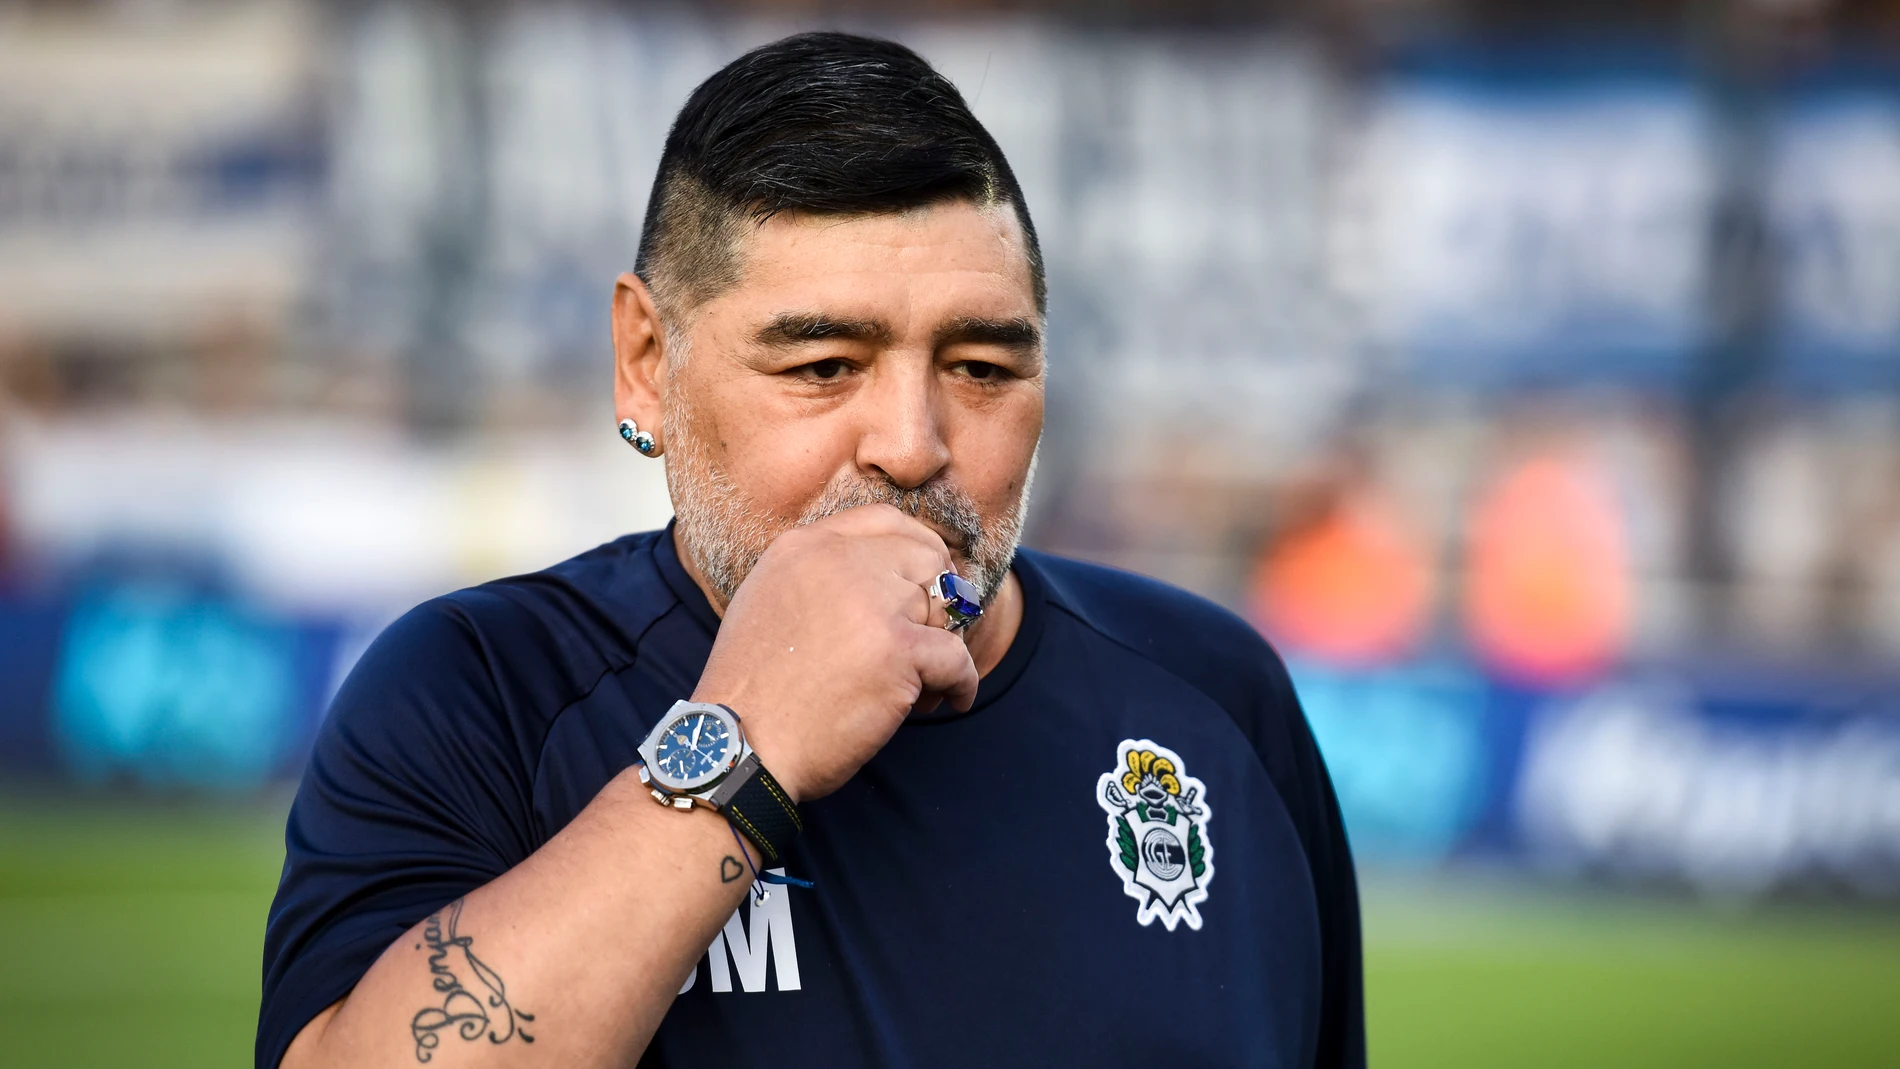 Maradona el 4 de enero de 2020